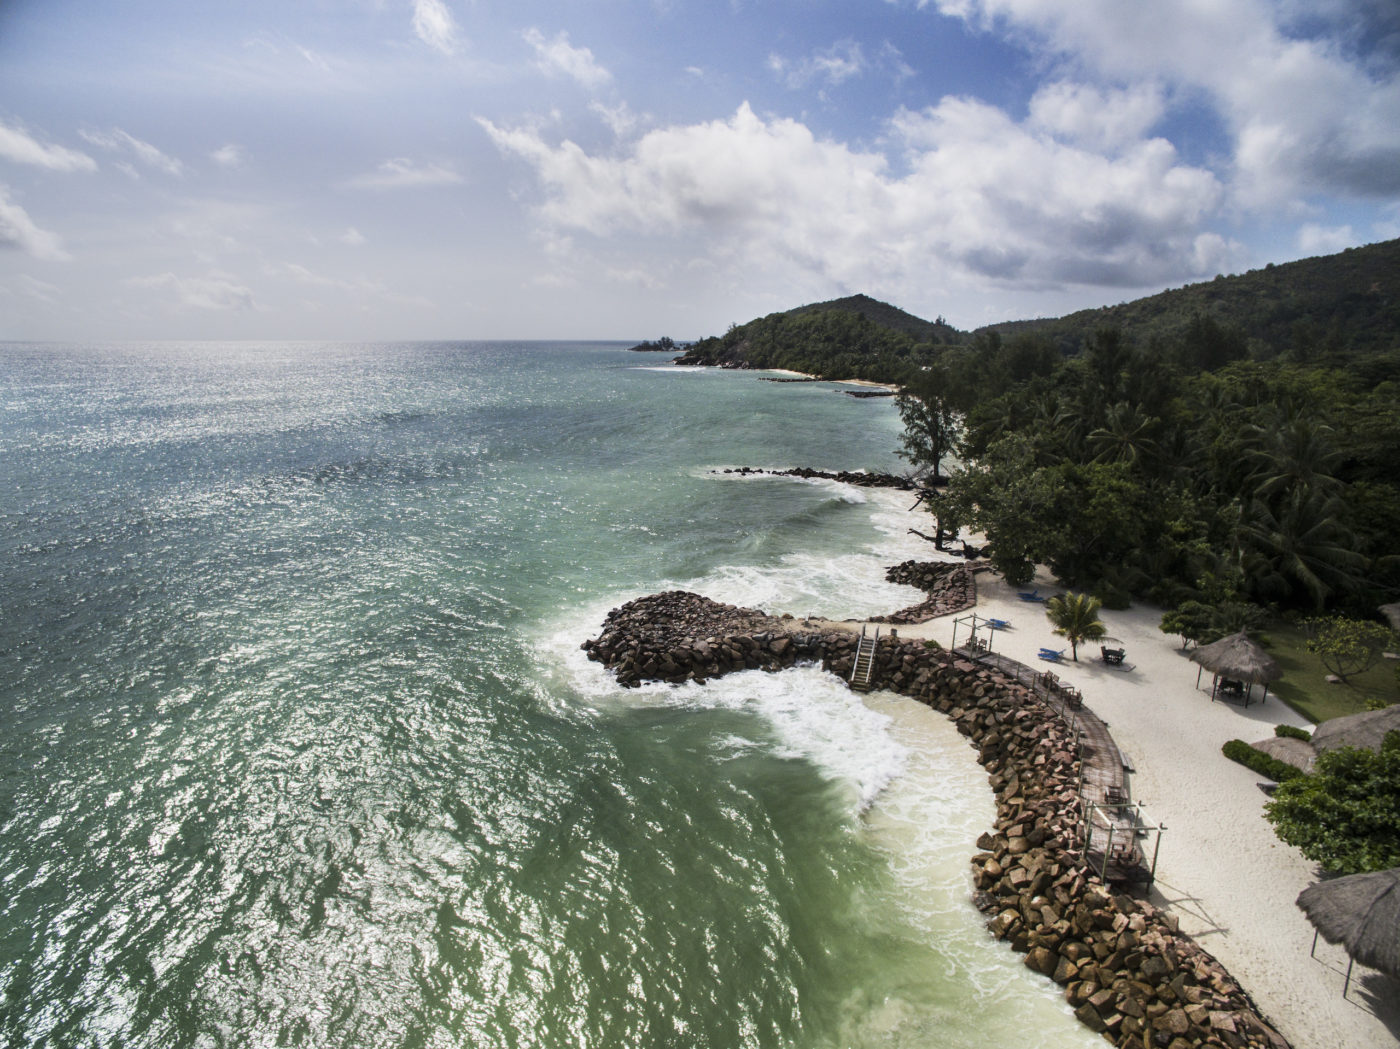 <p><span class="Y2IQFc" lang="es">Protección costera en las Seychelles, uno de los países más vulnerables a los efectos del cambio climático (Imagen: Kadir van Lohuizen / NOOR vía Flickr, CC BY-NC-SA 2.0)</span></p>